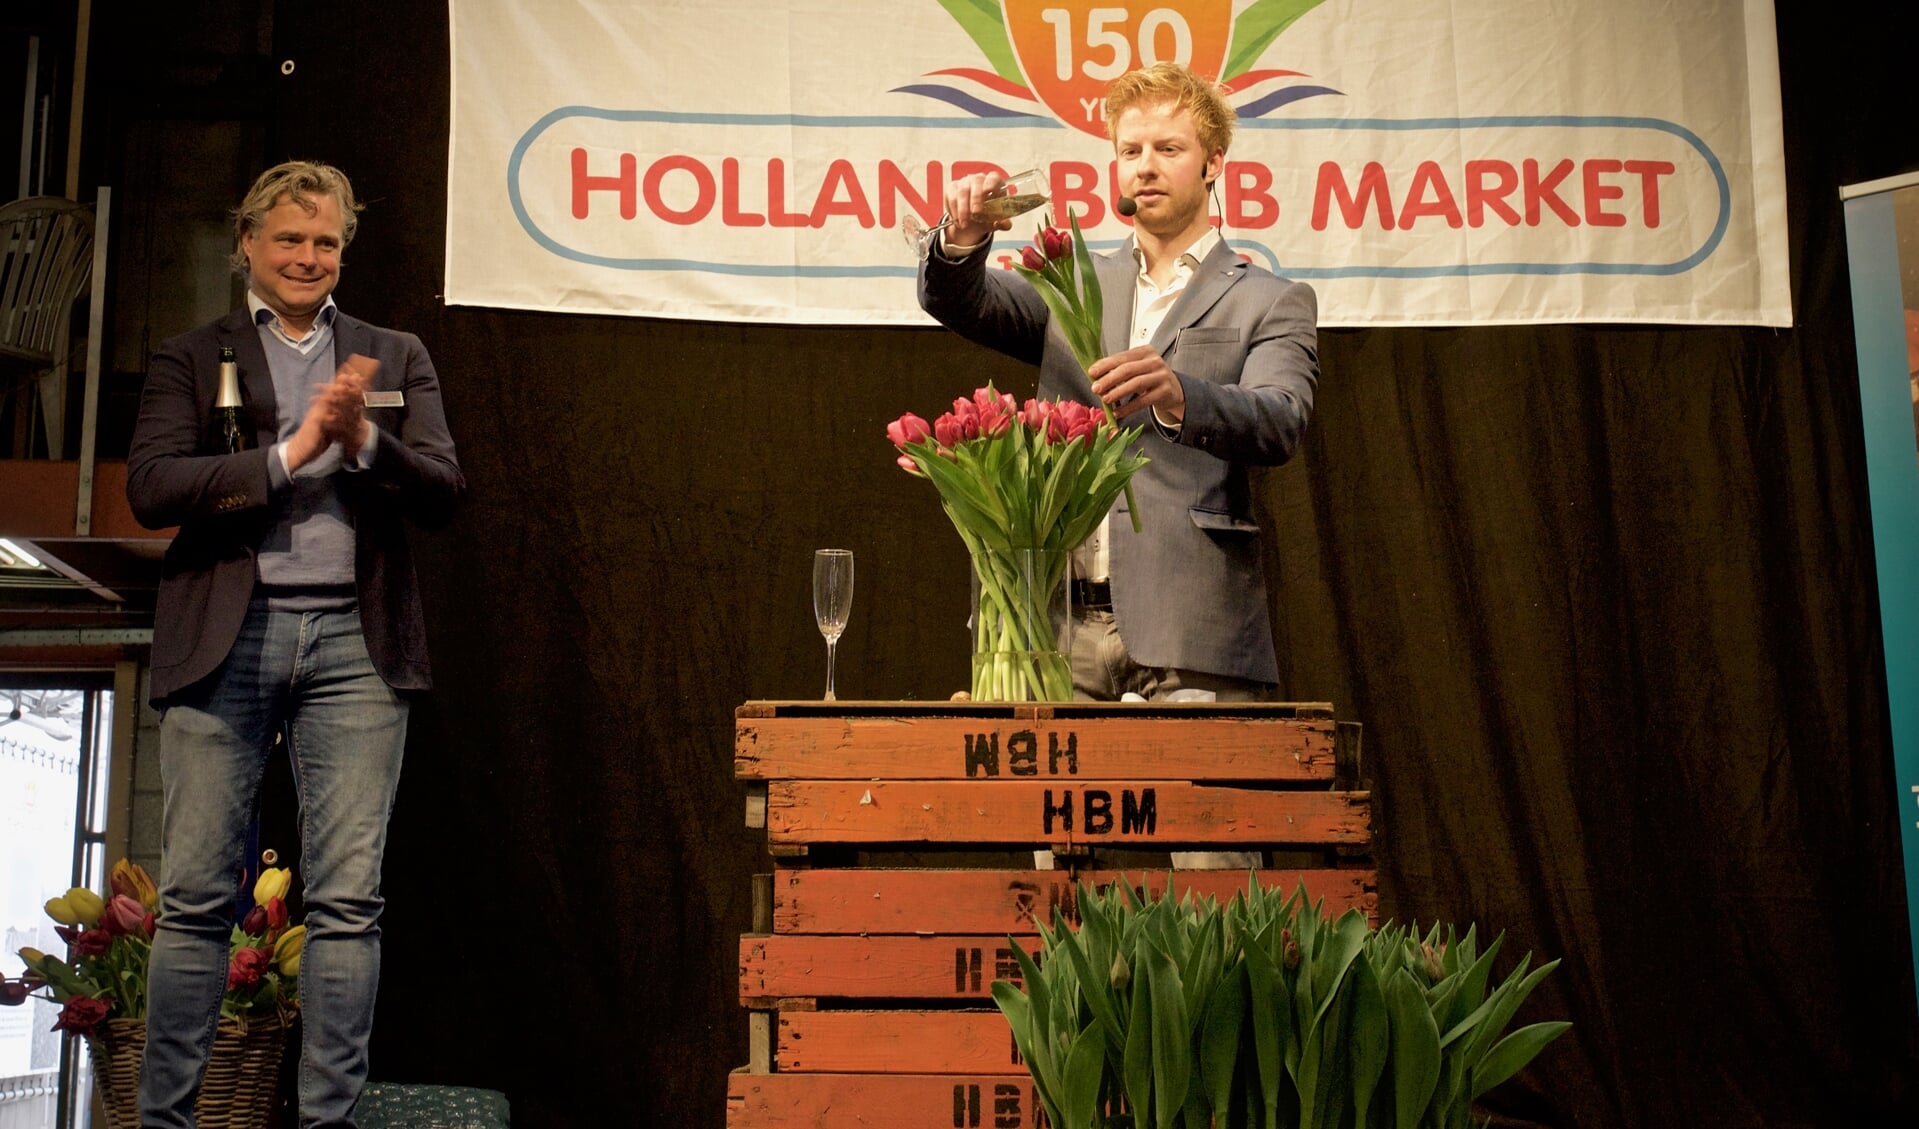 Directeur Joris van der Velden kijkt toe hoe illusionist Steve Carlin een naar hem genoemde tulp doopt.